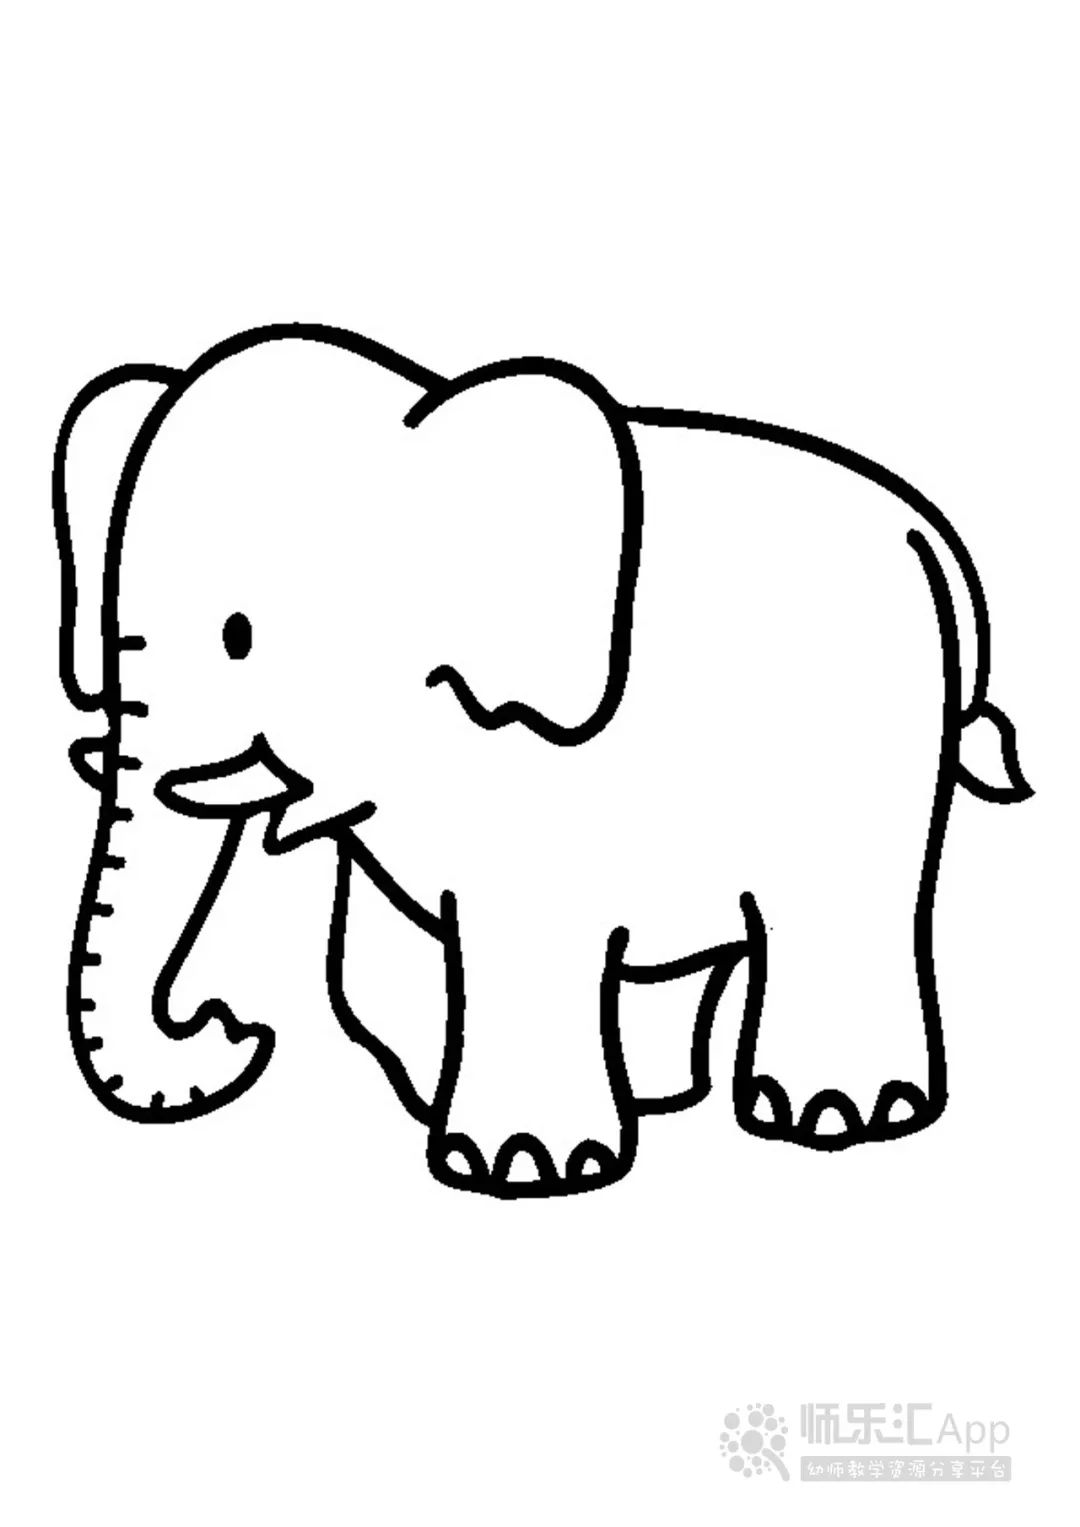 10岁～12岁少儿简单漂亮的画画 好看小学生彩色简笔画大象怎么画 咿咿呀呀儿童手工网